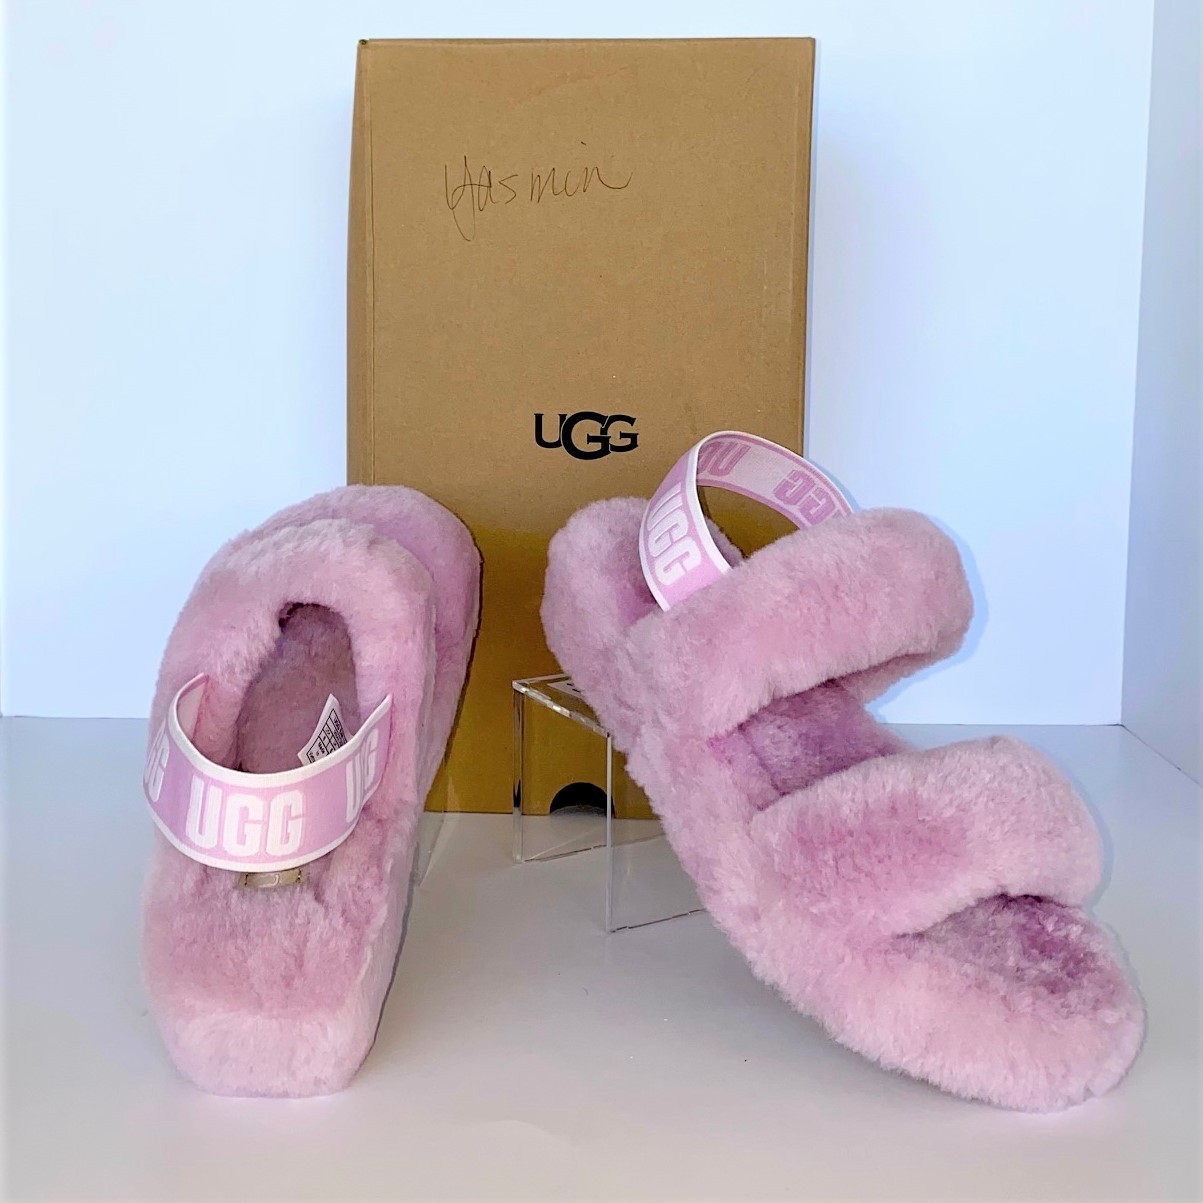 UGG Oh Yeah California Pink Slides - $115.00